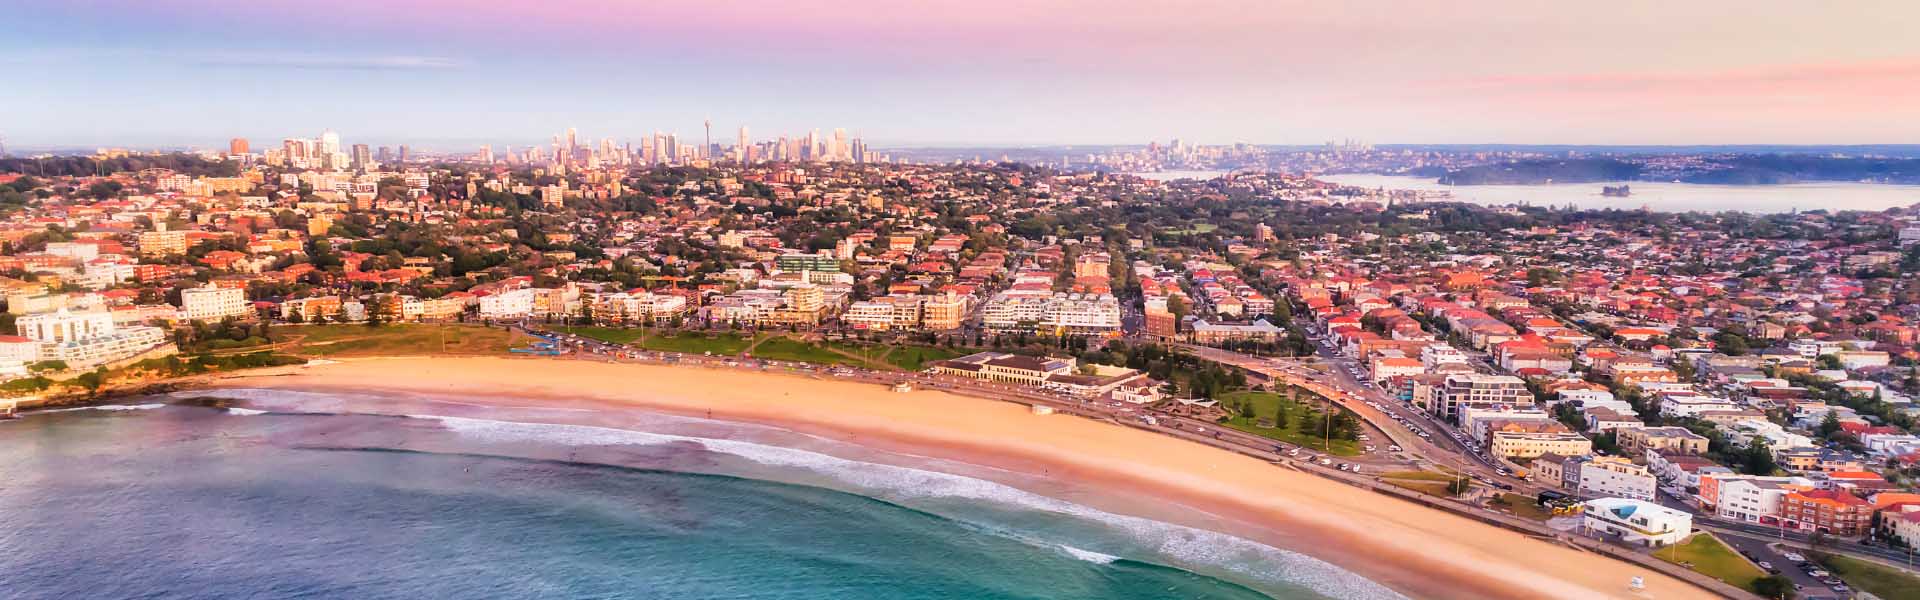 Bondi Beach, Sydney 